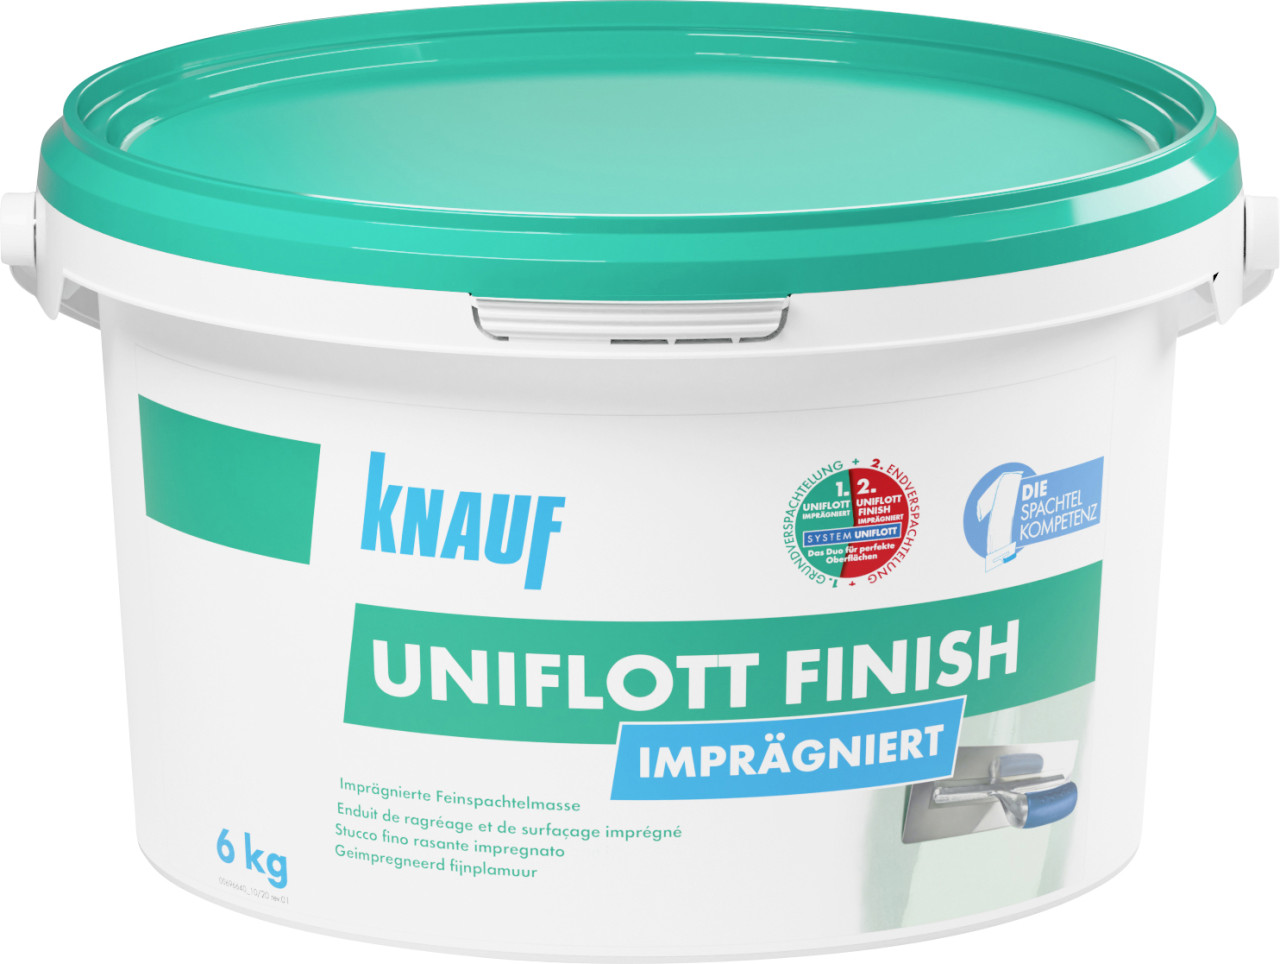 Knauf Uniflott Finish Spachtelmasse imprägniert 6 kg von Knauf